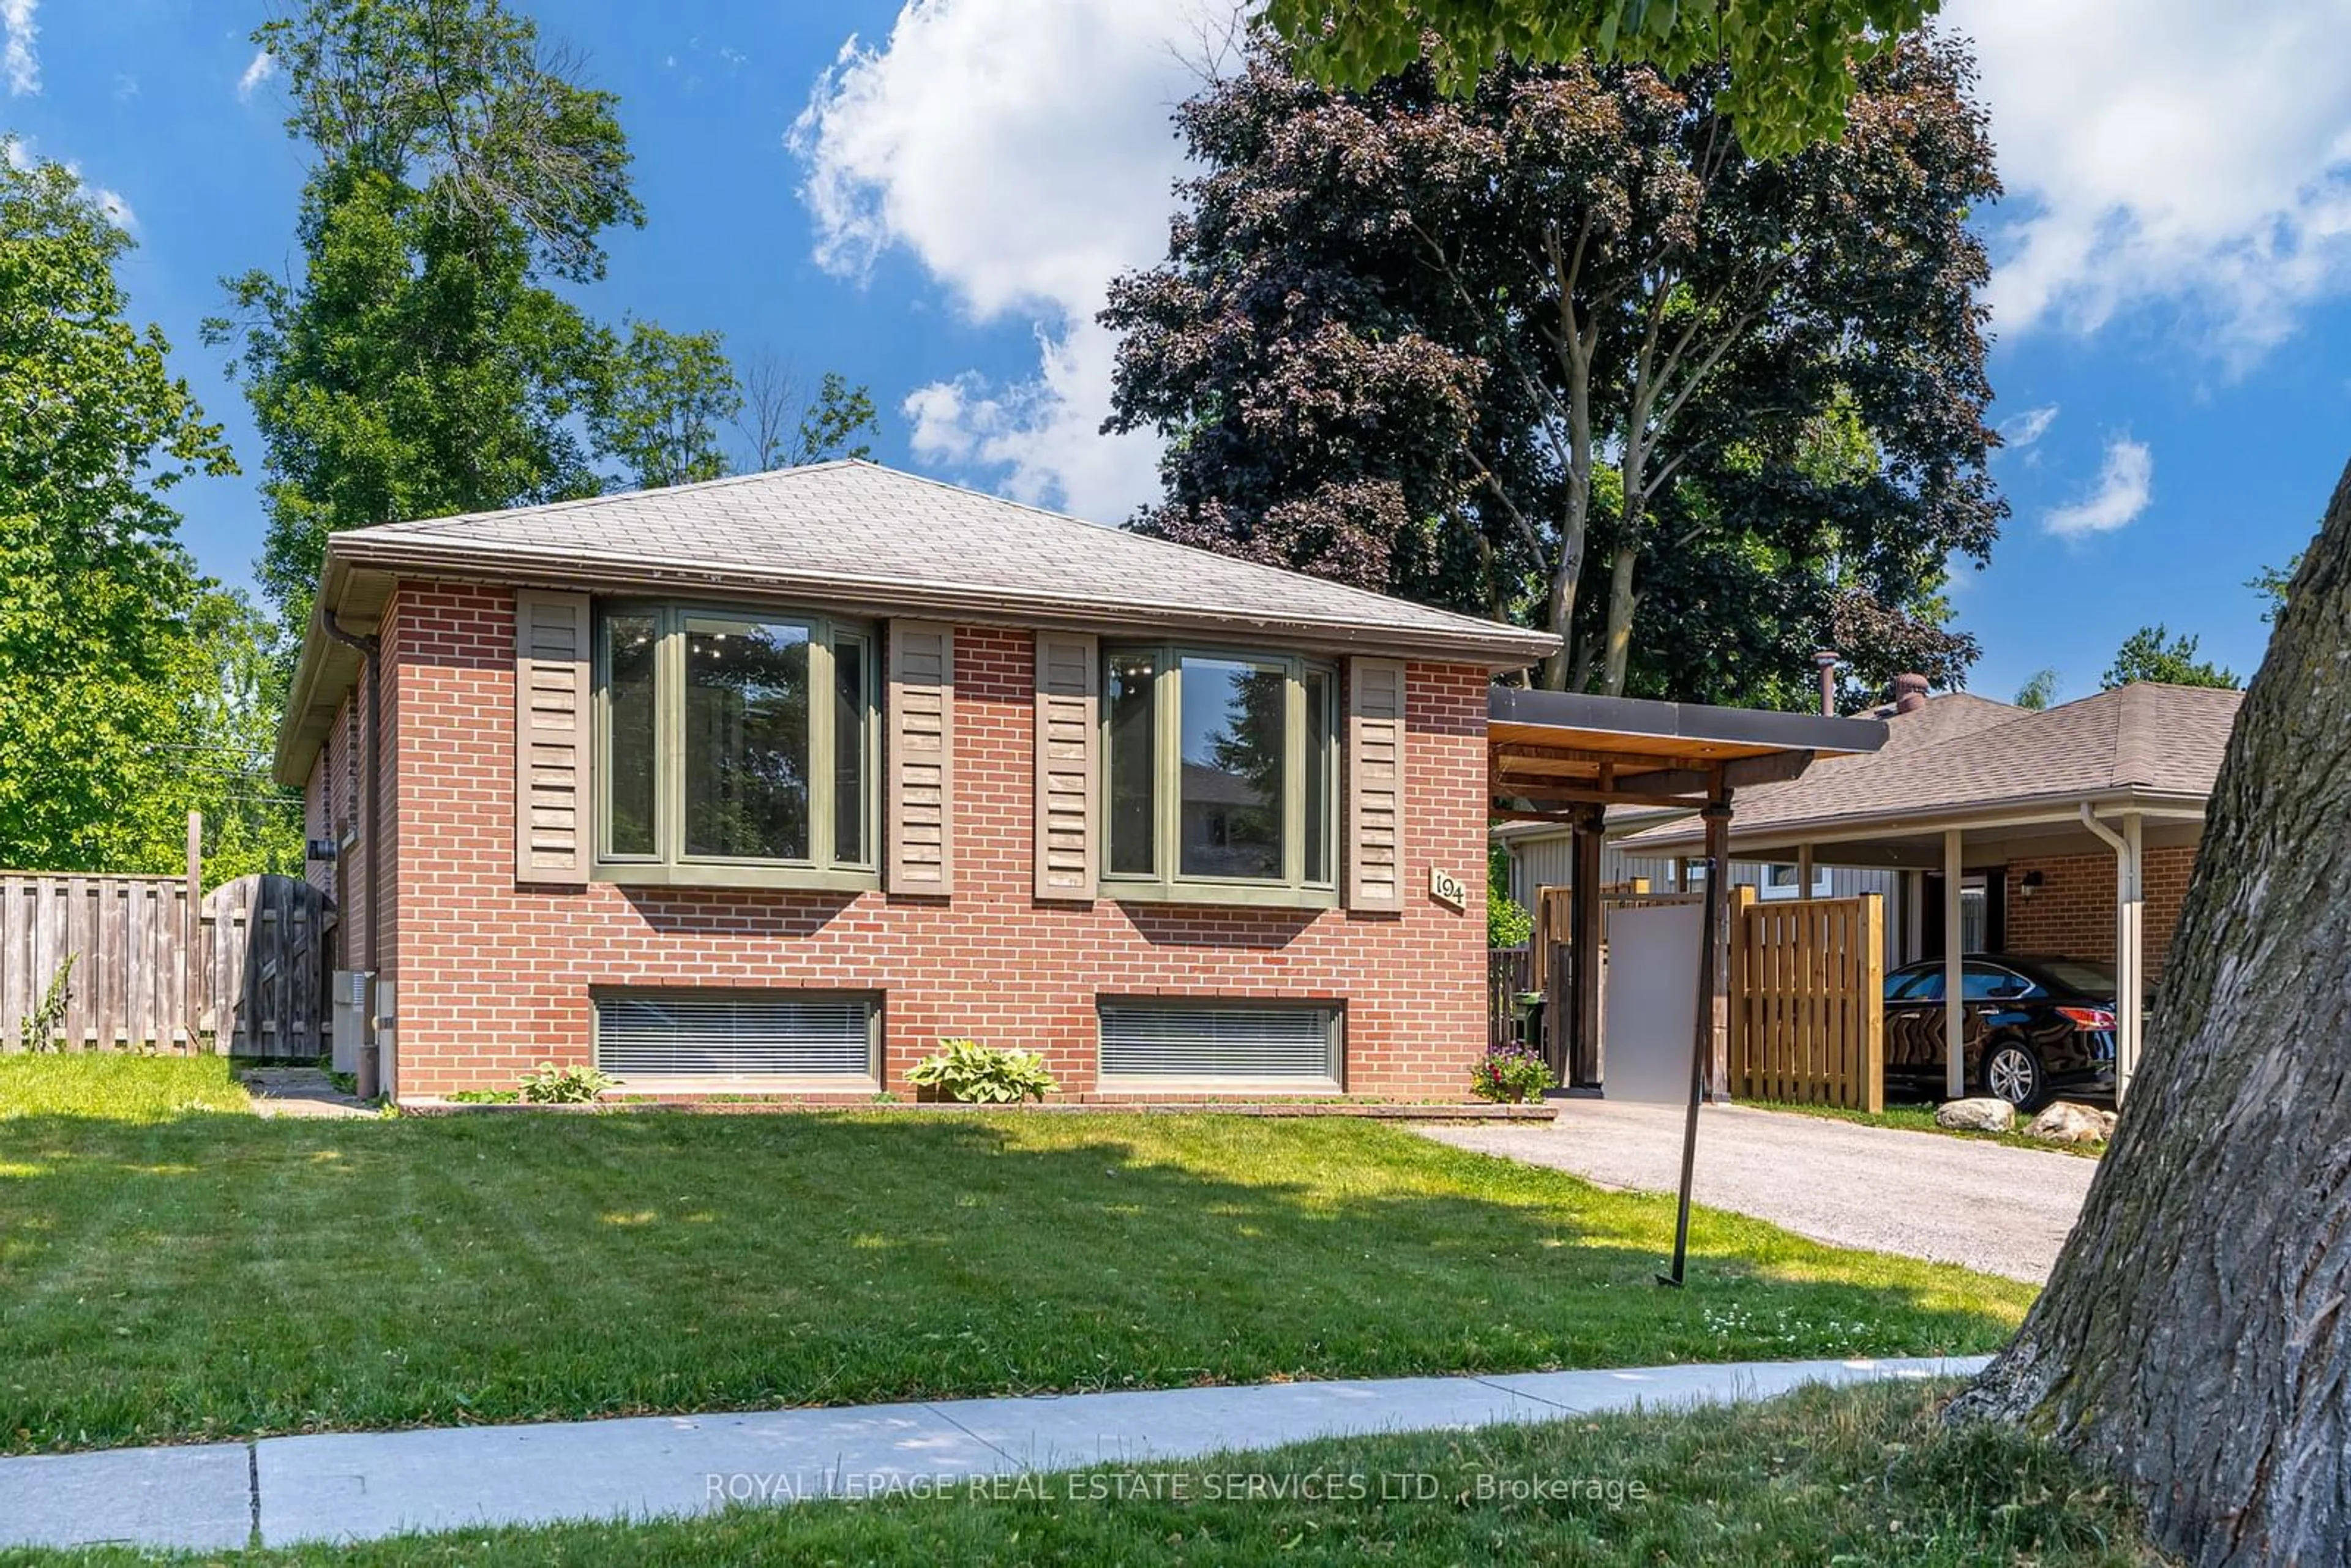 Home with brick exterior material for 194 Sylvan Ave, Toronto Ontario M1E 1A3